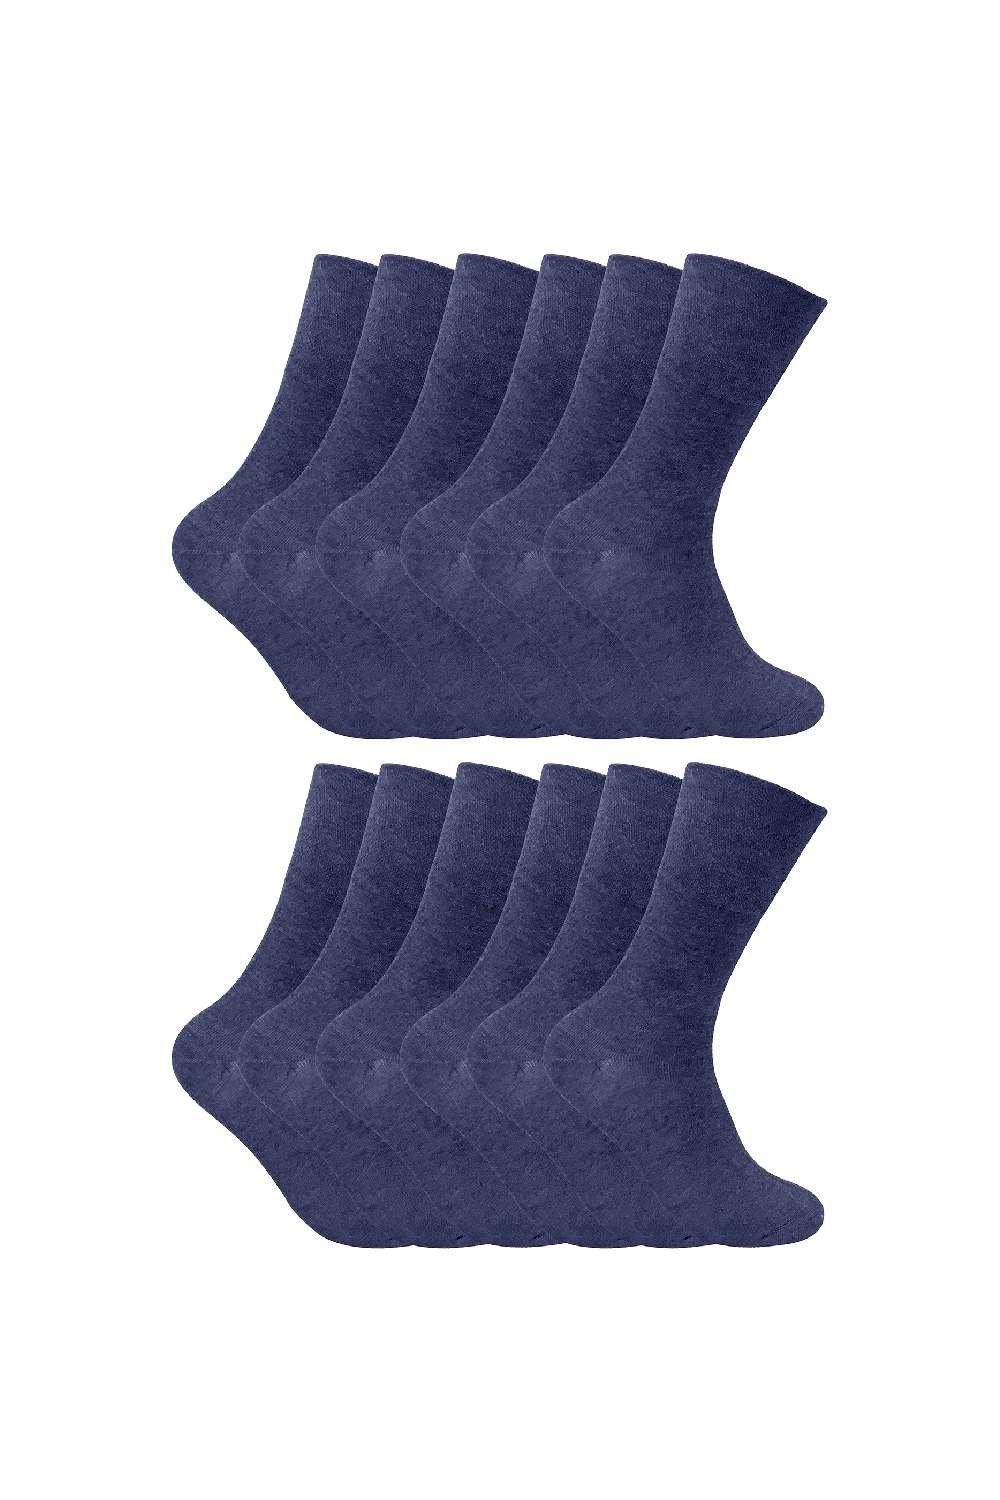 12 Pairs Thermal Diabetic Socks - Extra Wide Diabetic Socks